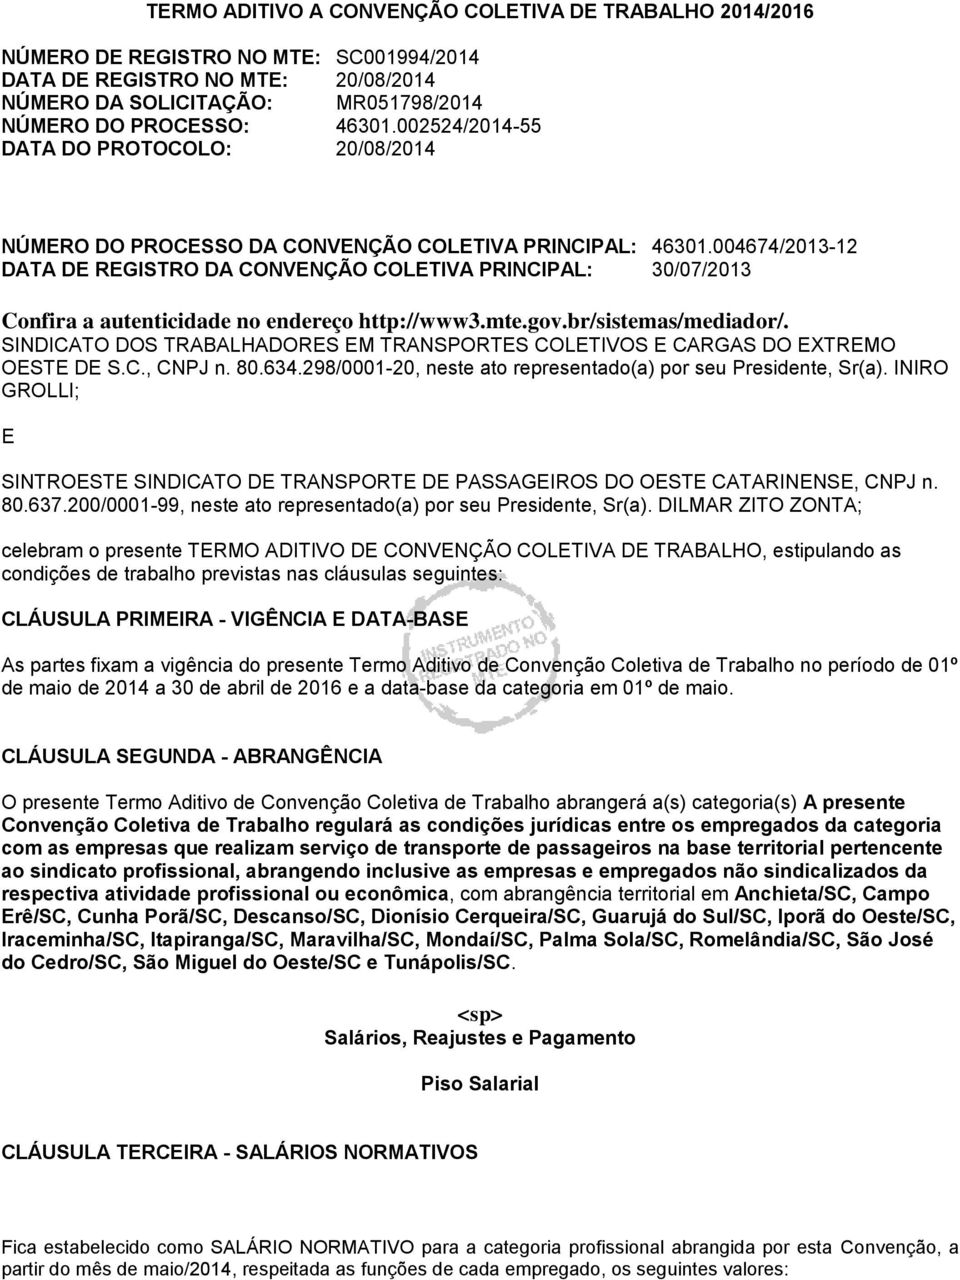 004674/2013-12 DATA DE REGISTRO DA CONVENÇÃO COLETIVA PRINCIPAL: 30/07/2013 Confira a autenticidade no endereço http://www3.mte.gov.br/sistemas/mediador/.